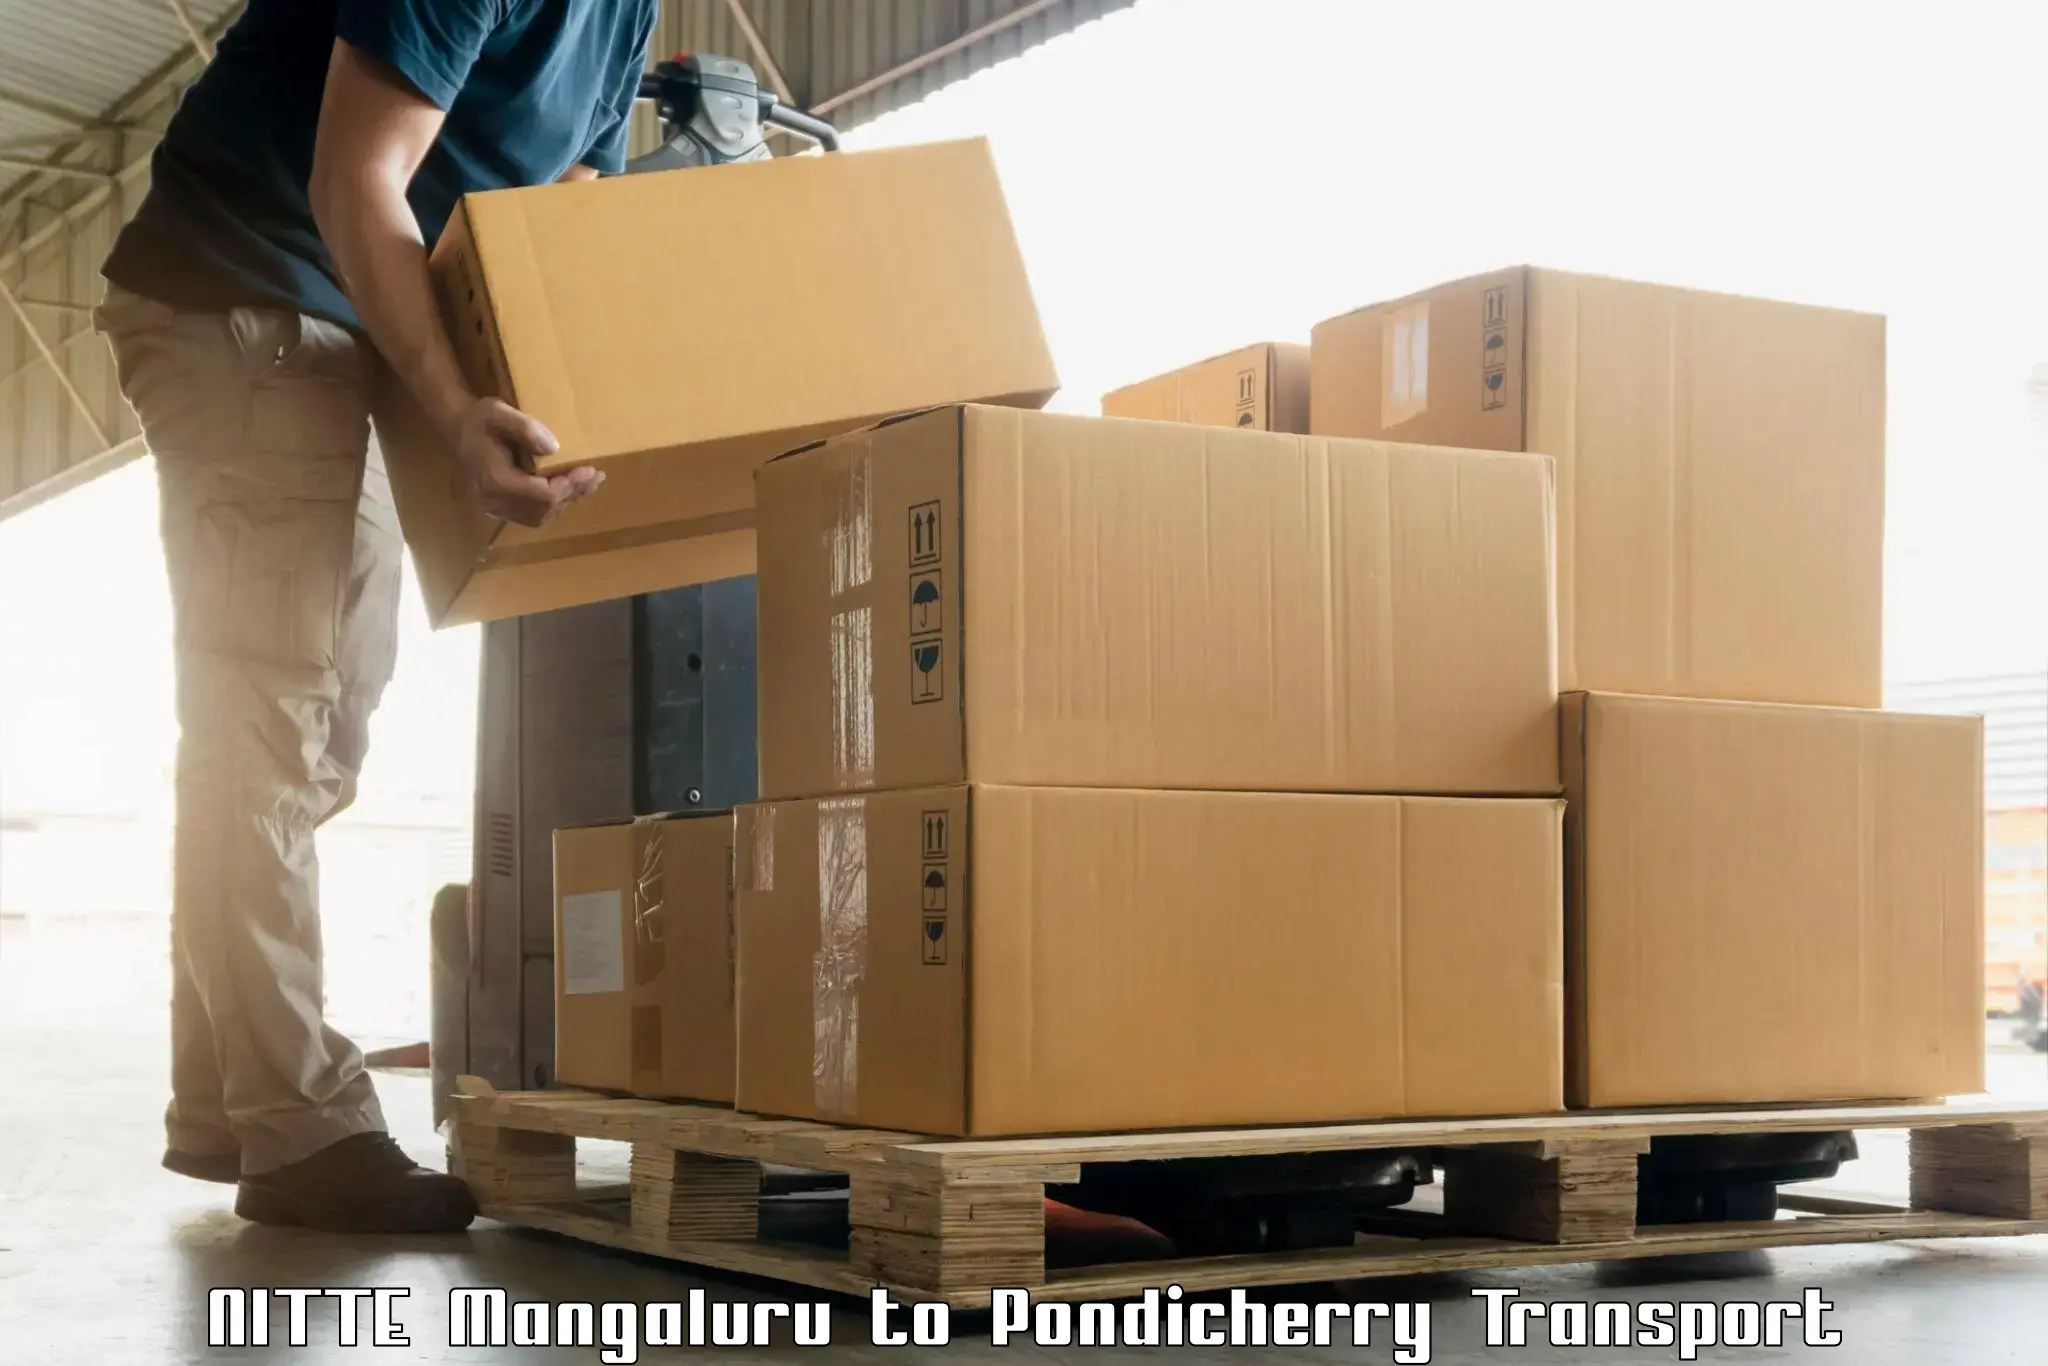 Road transport online services in NITTE Mangaluru to Pondicherry